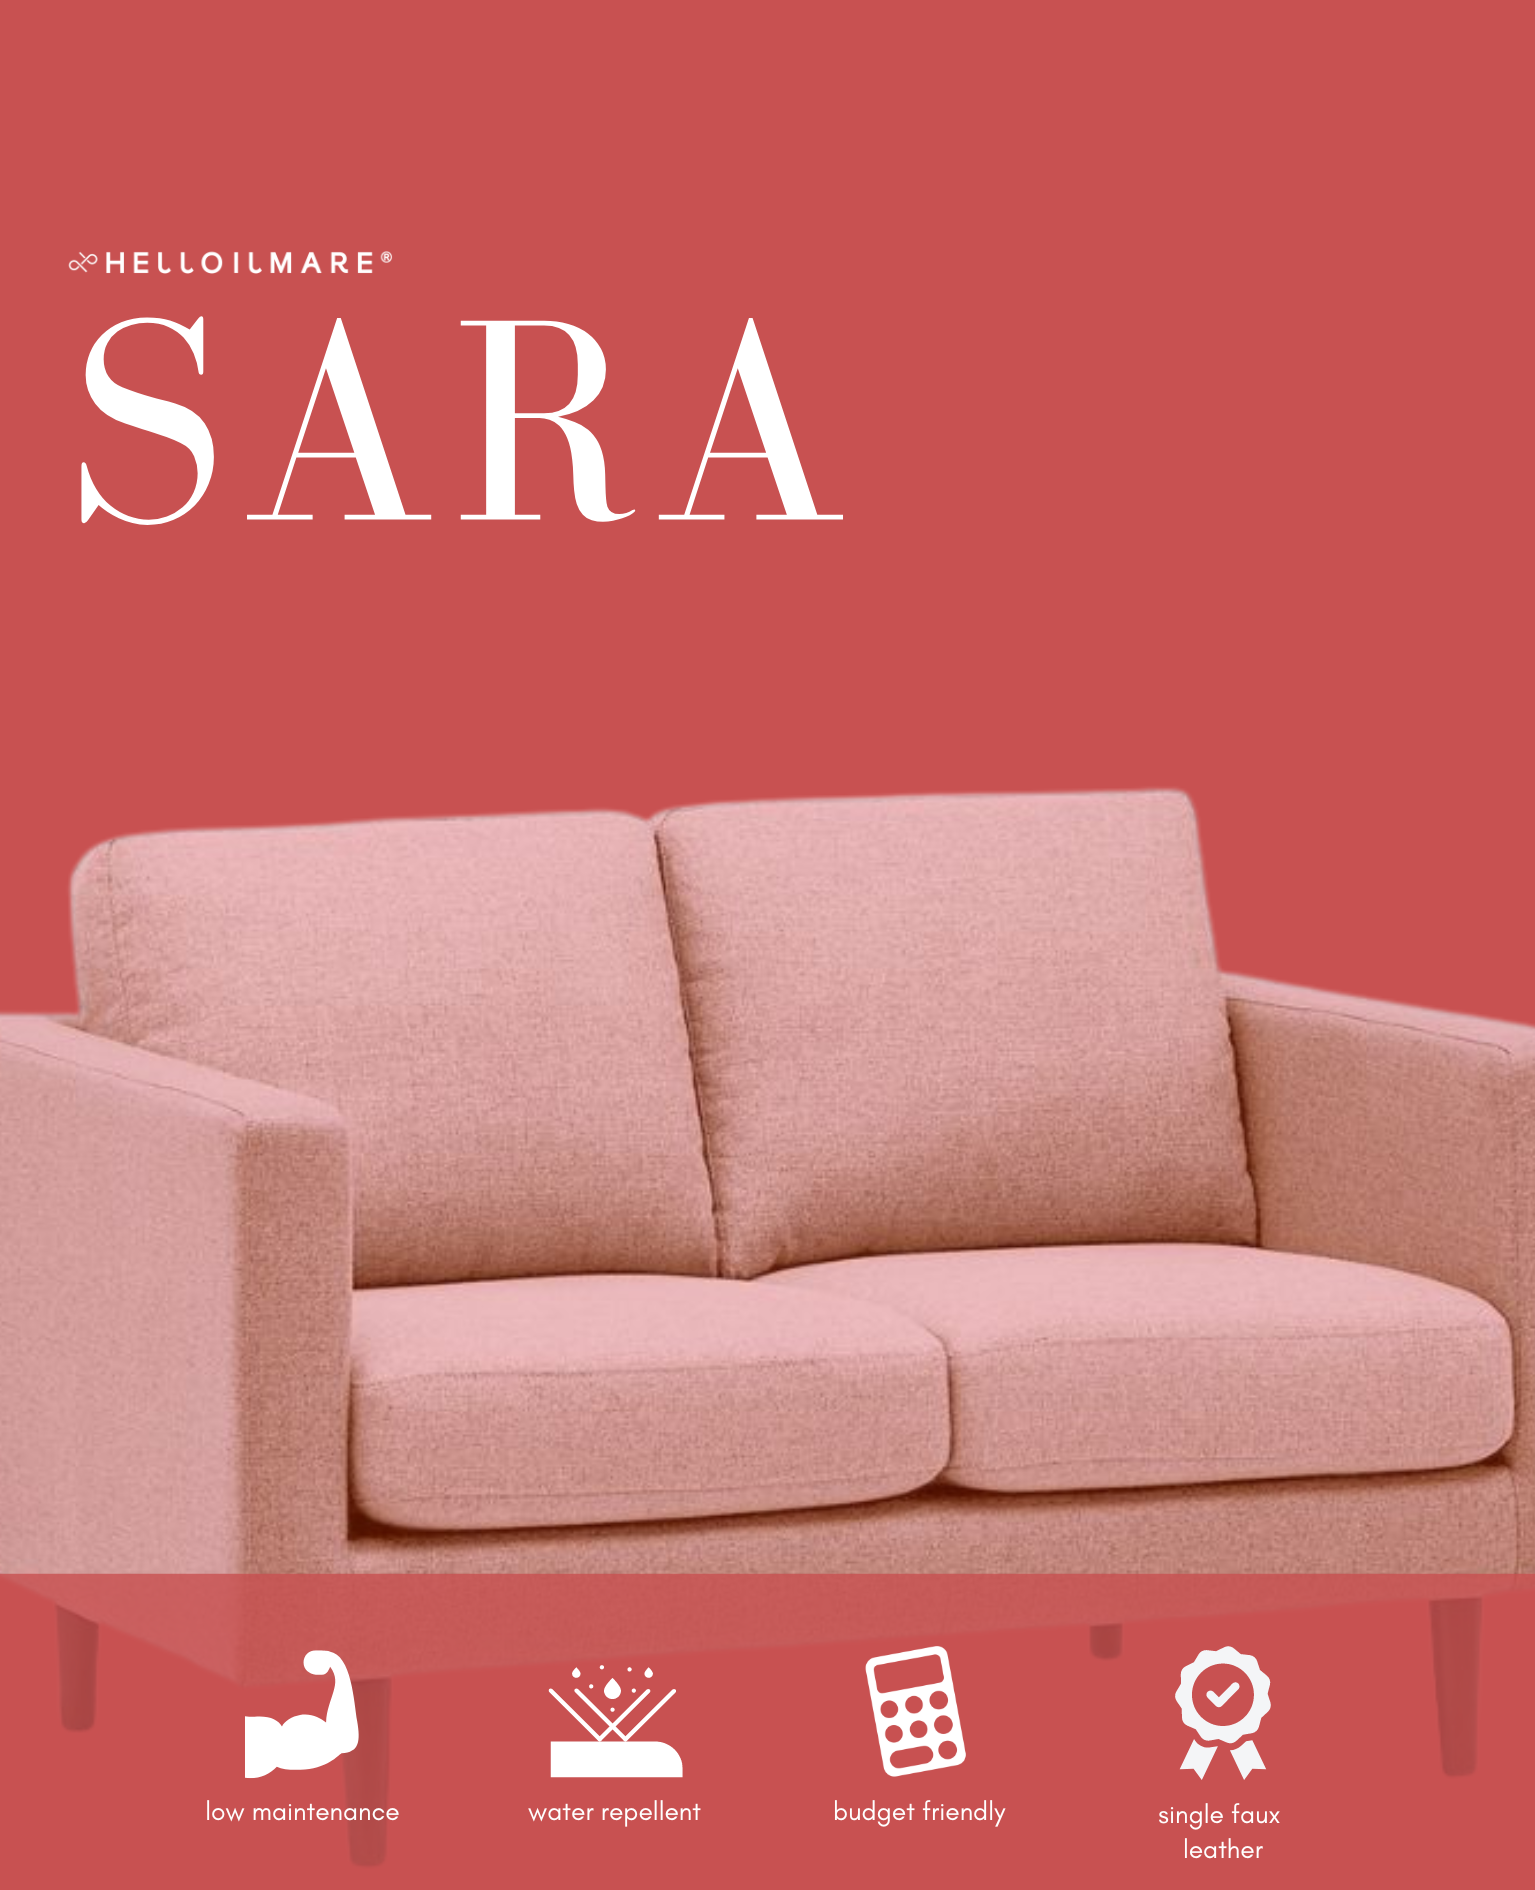 1 Seater Sara - Helloilmare